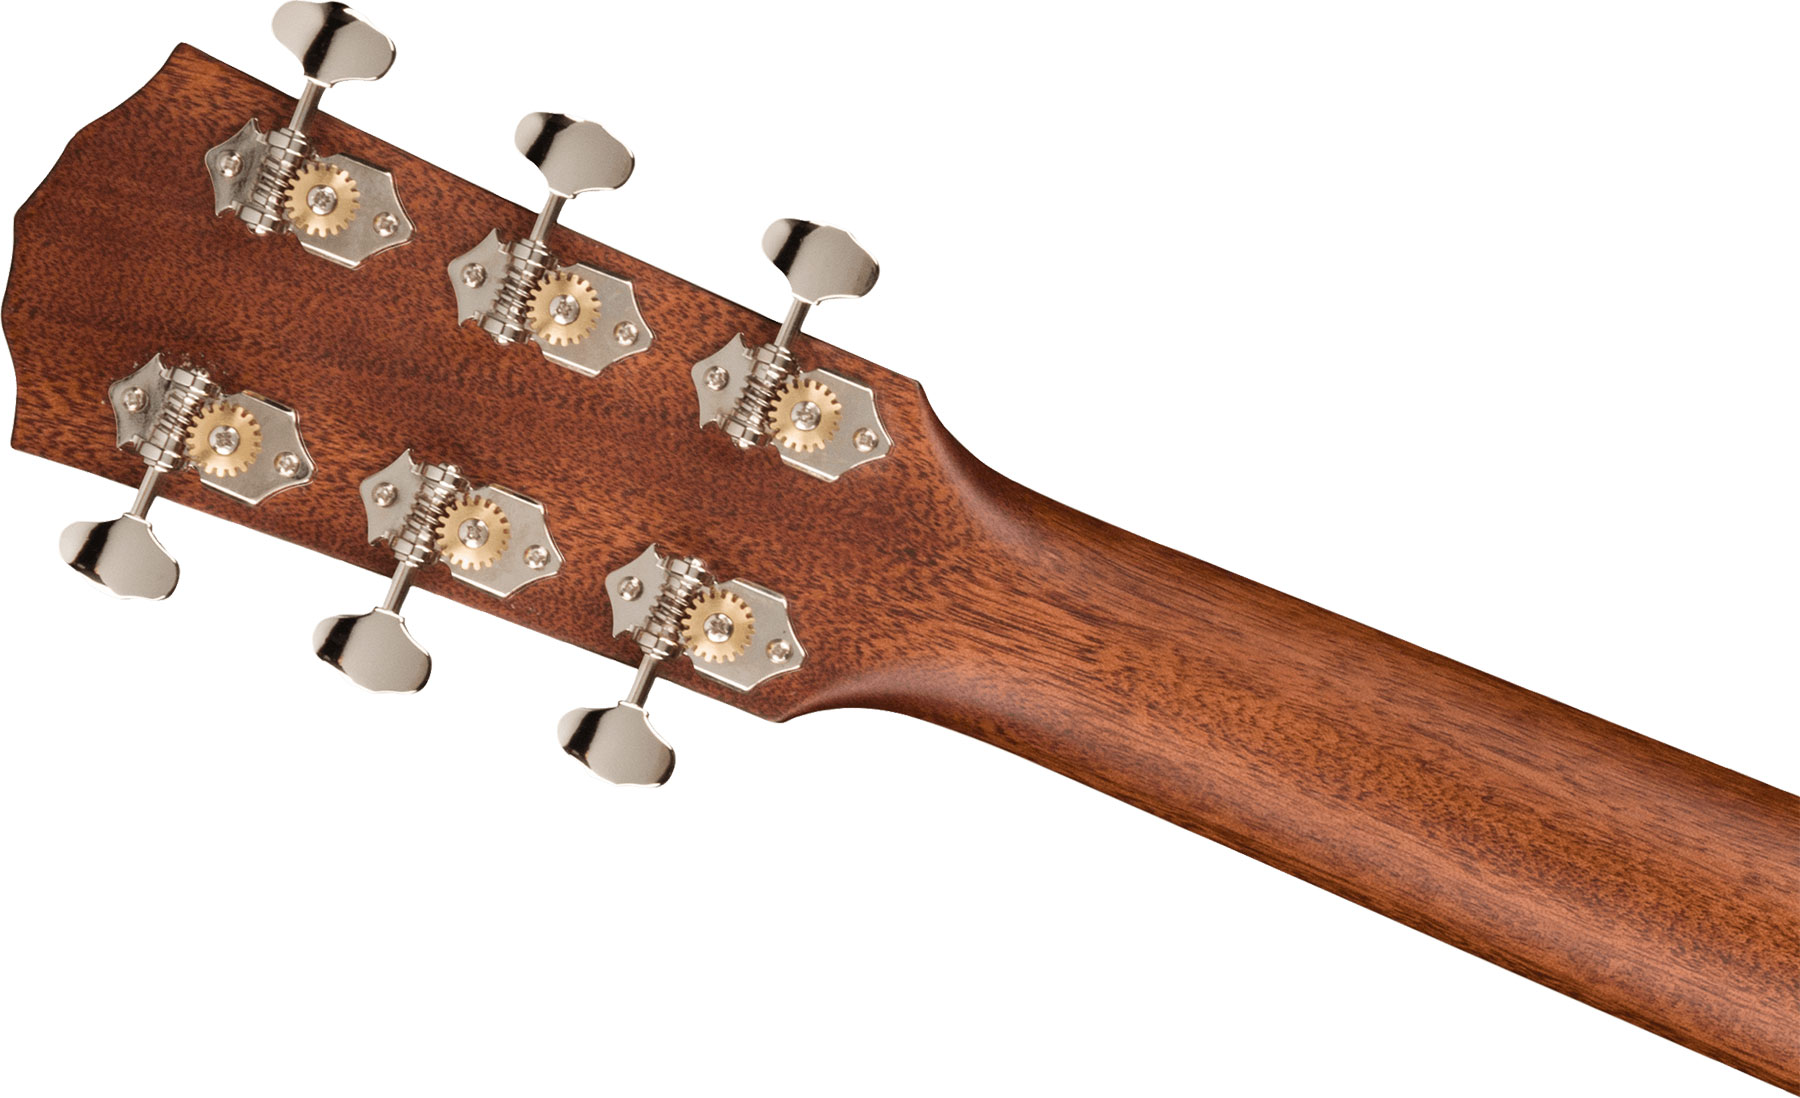 Fender Pd-220e Paramount Dreadnought Tout Acajou Ova - Aged Cognac Burst - Electro acoustic guitar - Variation 3